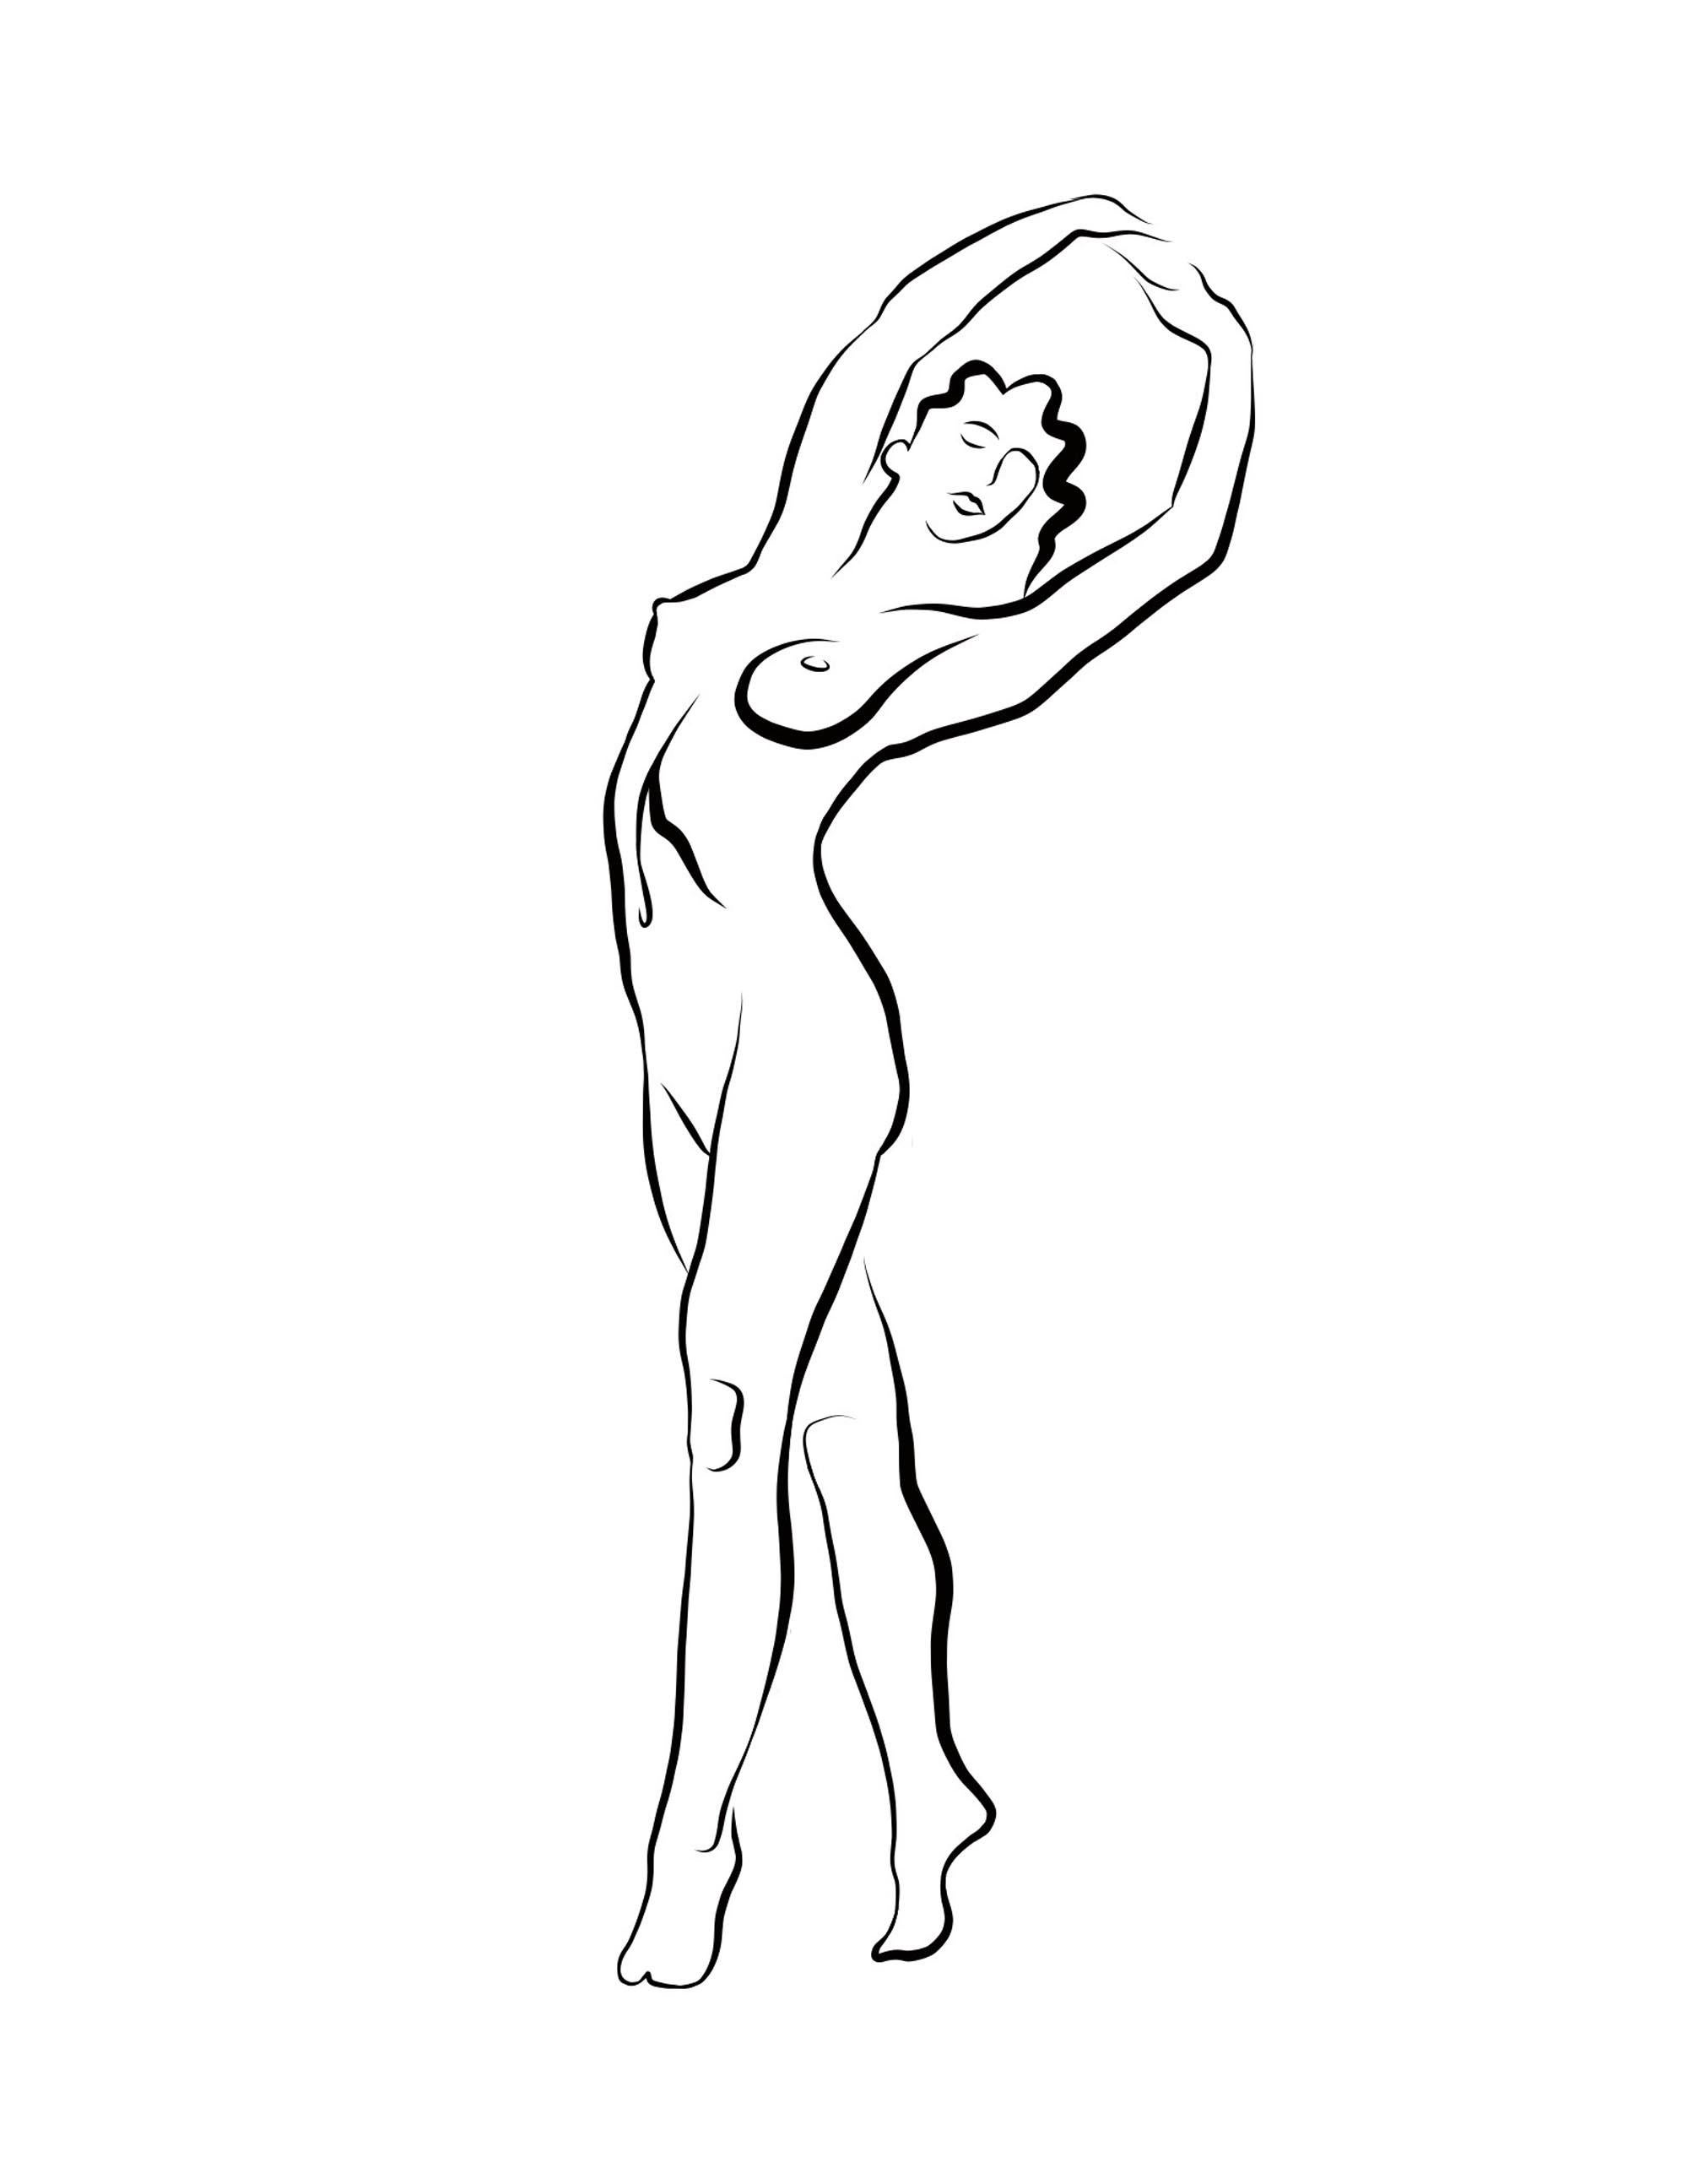 Michael Binkley Nude Print – Haiku #56 – Digitale Vector-Zeichnung, stehende weibliche Aktfigur, Arme hochgehoben